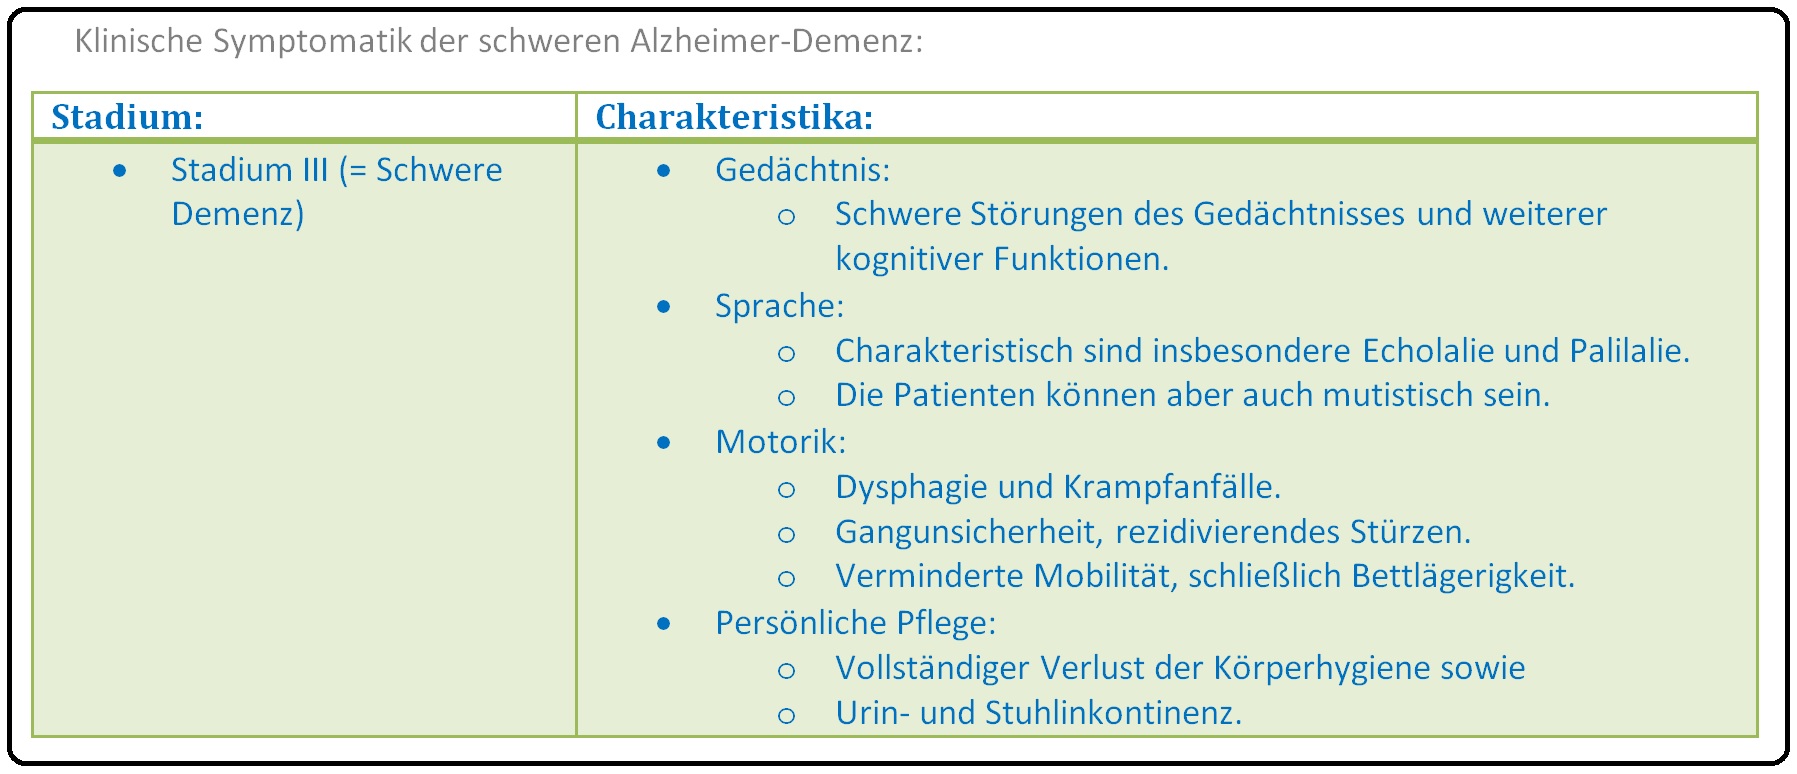 493 Klinische Symptomatik der schweren Alzheimer Demenz